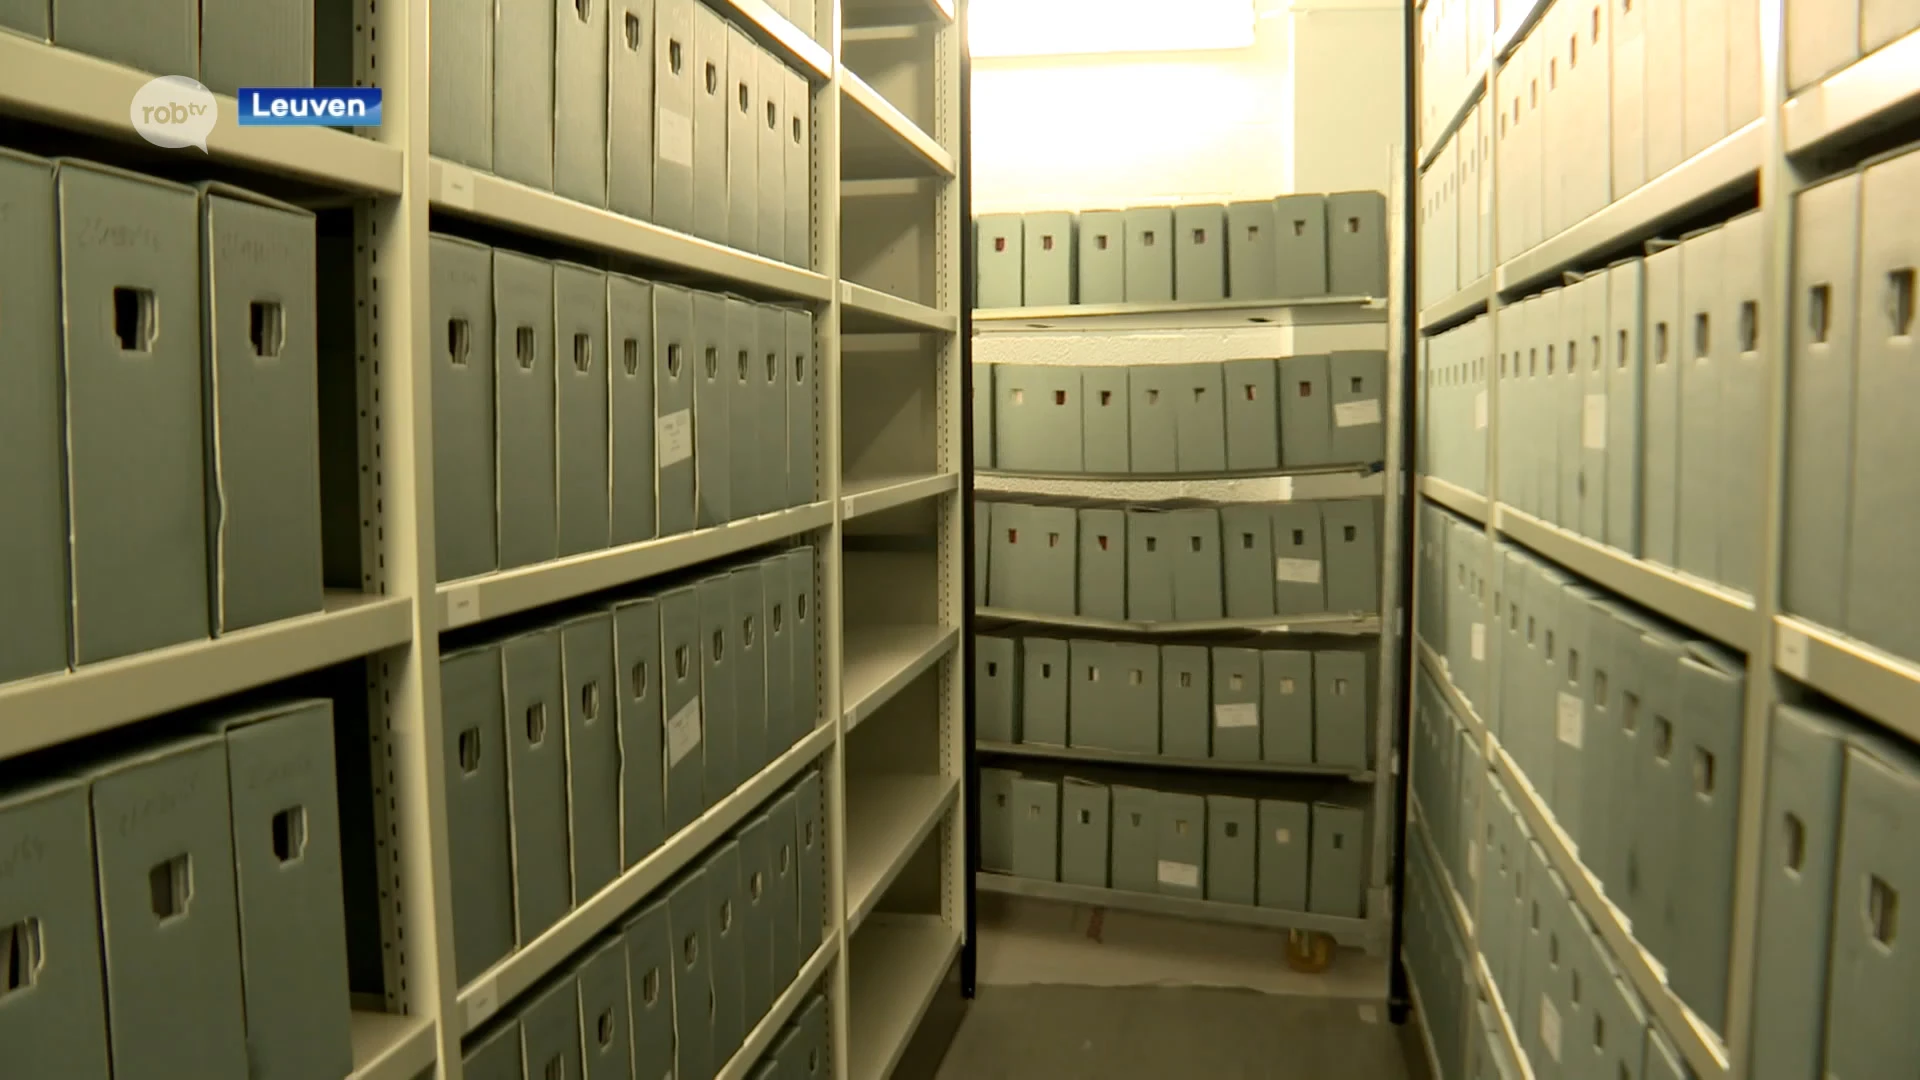 Leuvense OCMW-archief verhuist naar Stadsarchief: 2 kilometer aan materialen verhuisd